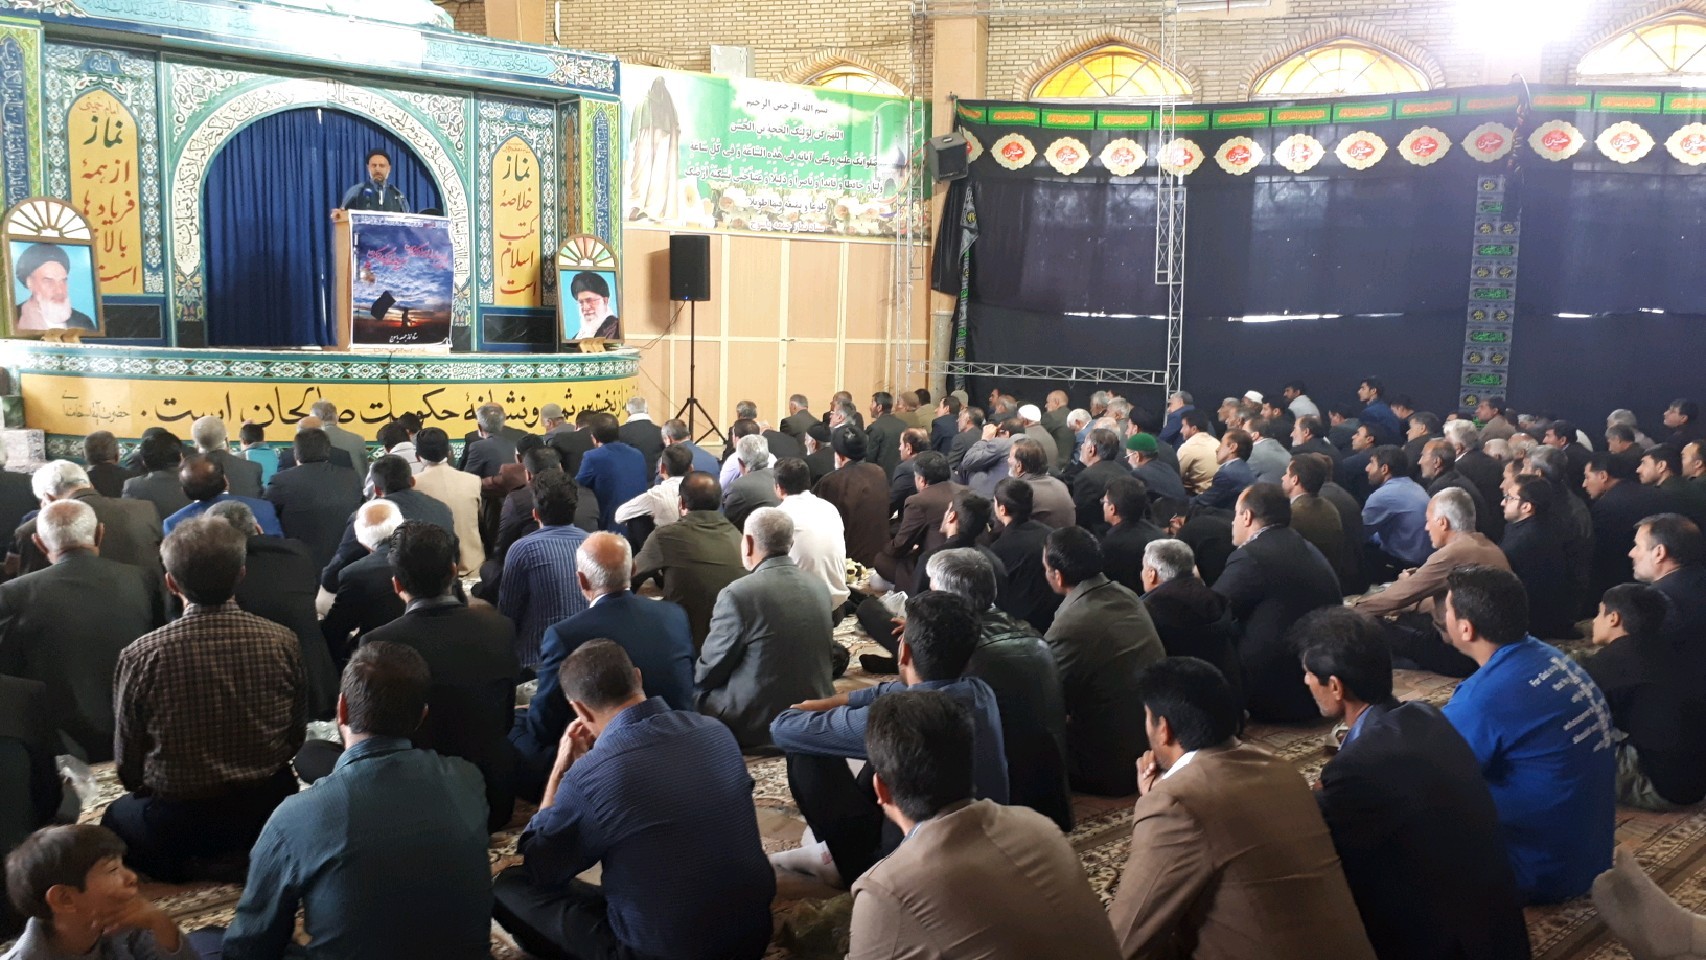 نتیجه مقاومت در دوران دفاع مقدس نتیجه عزت ایران است
